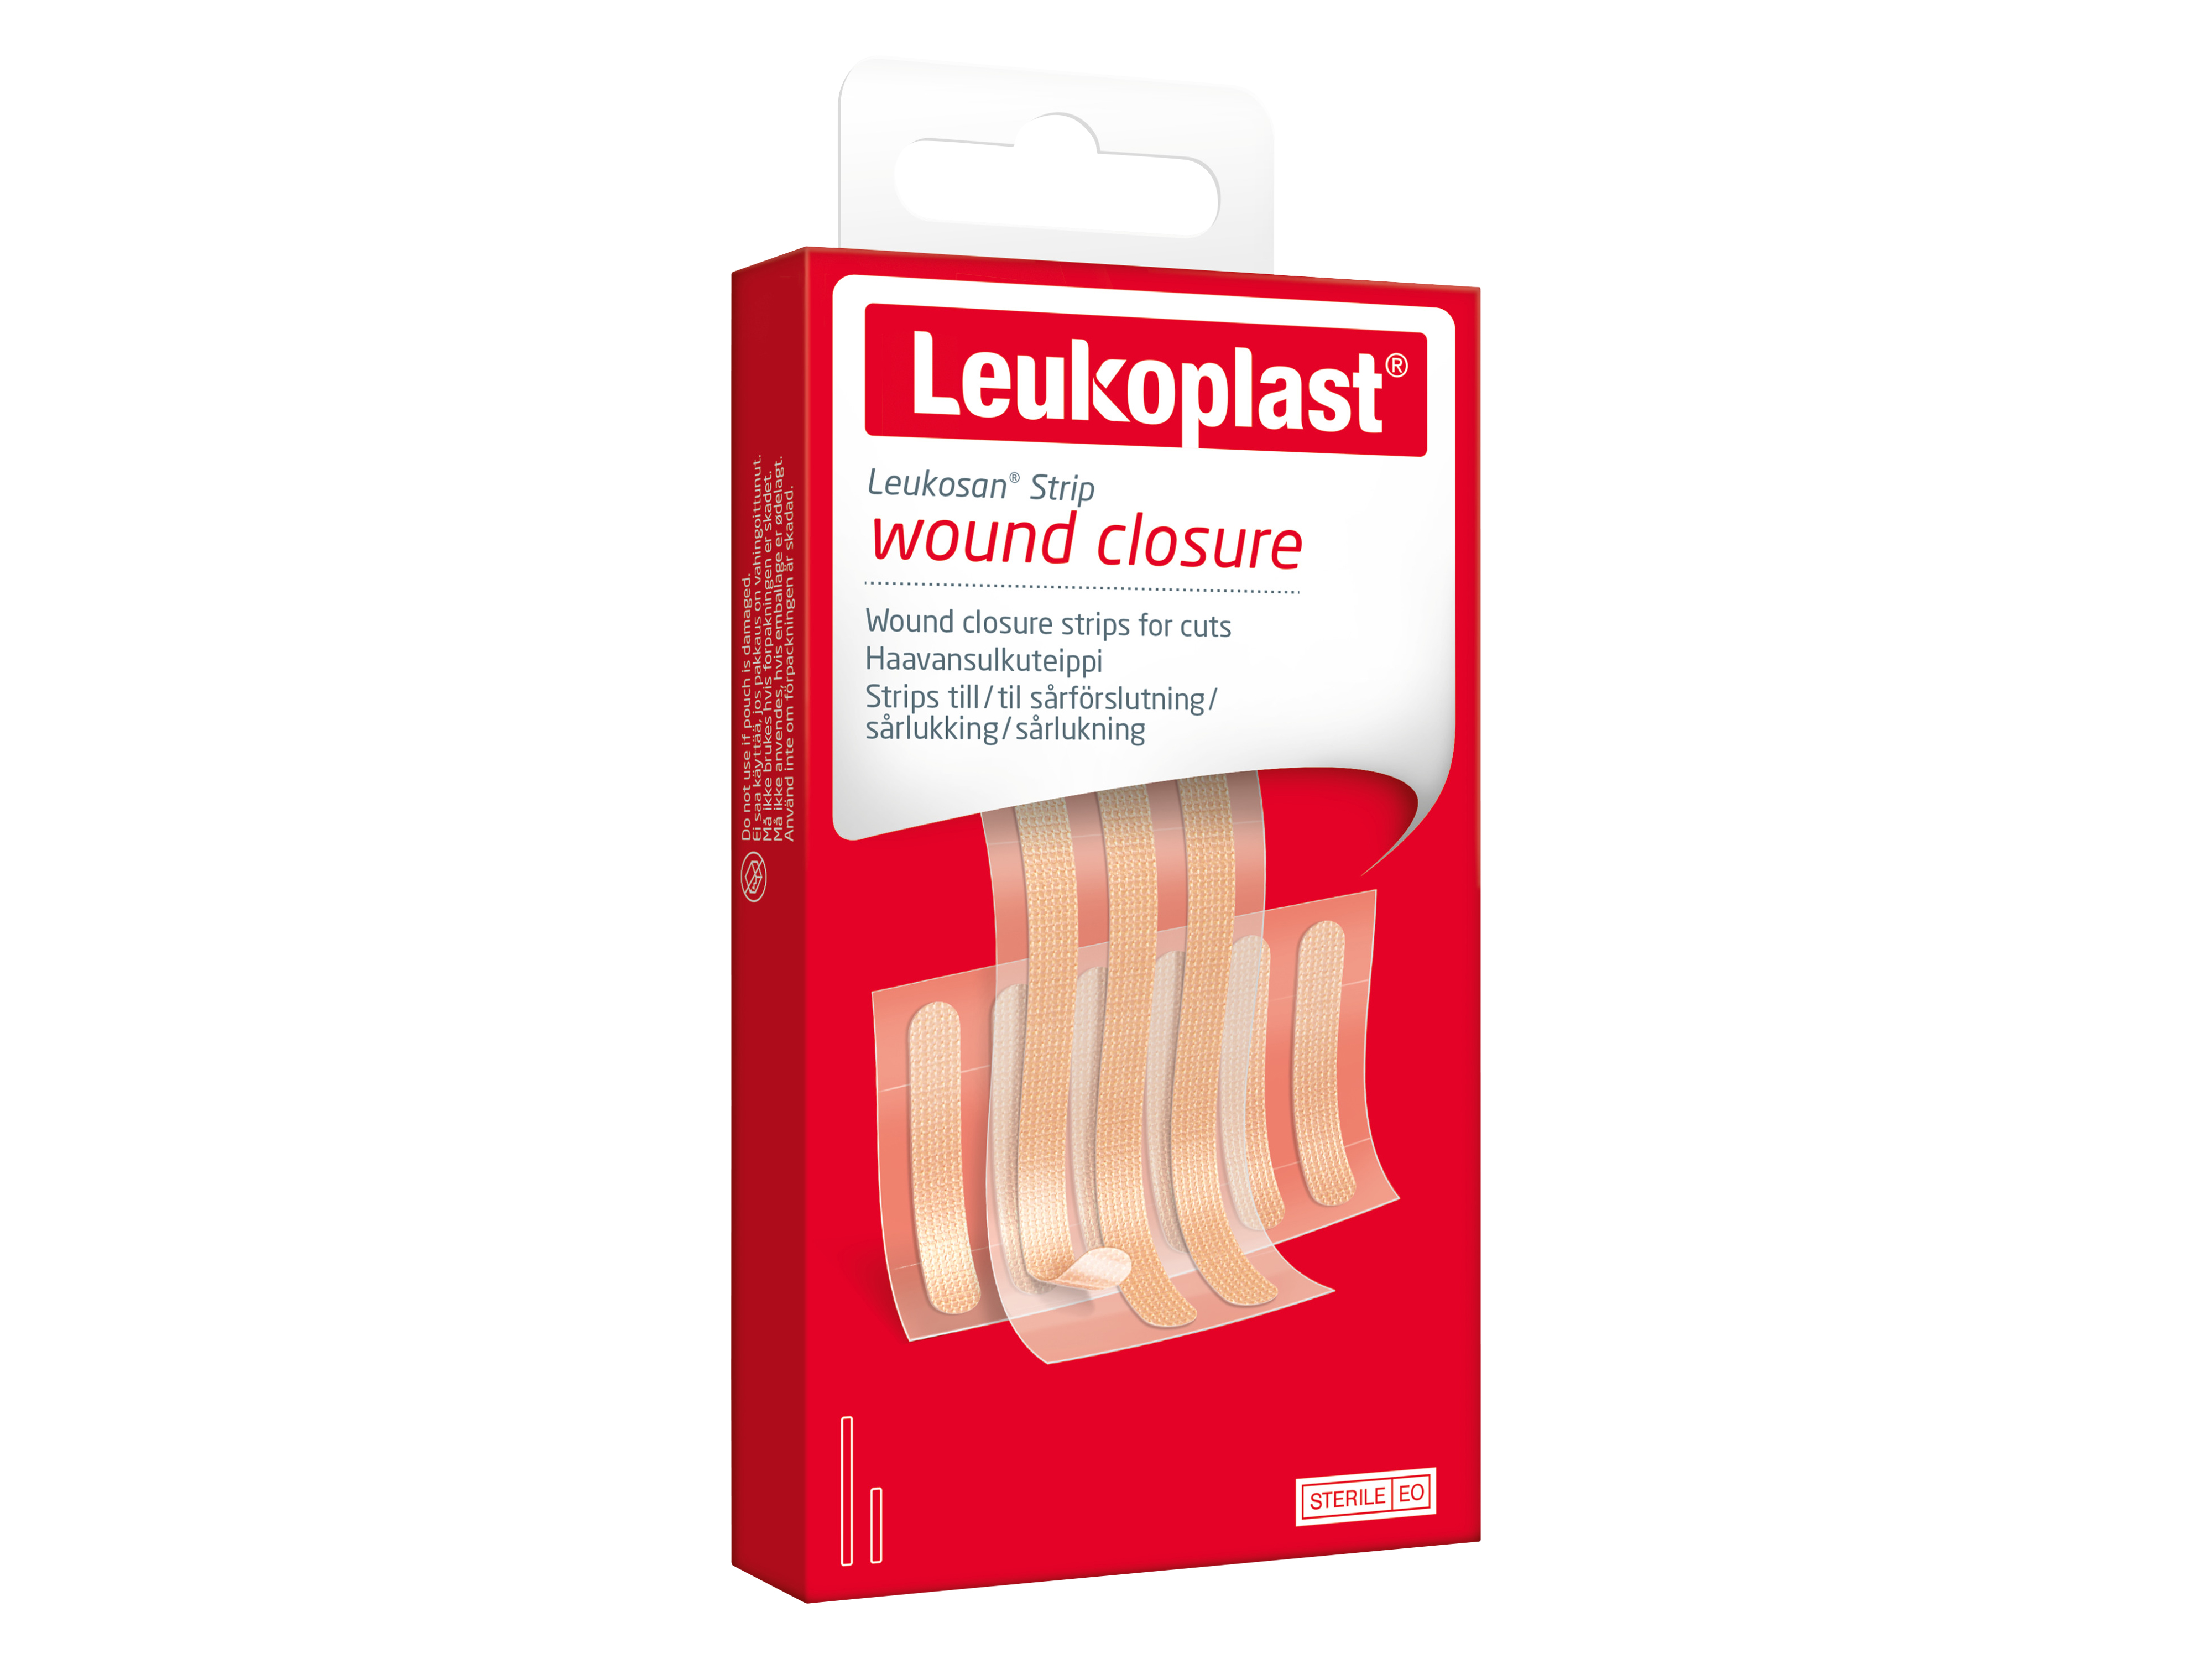 Leukoplast Leukosan Strip Wound Closure, 9 stk